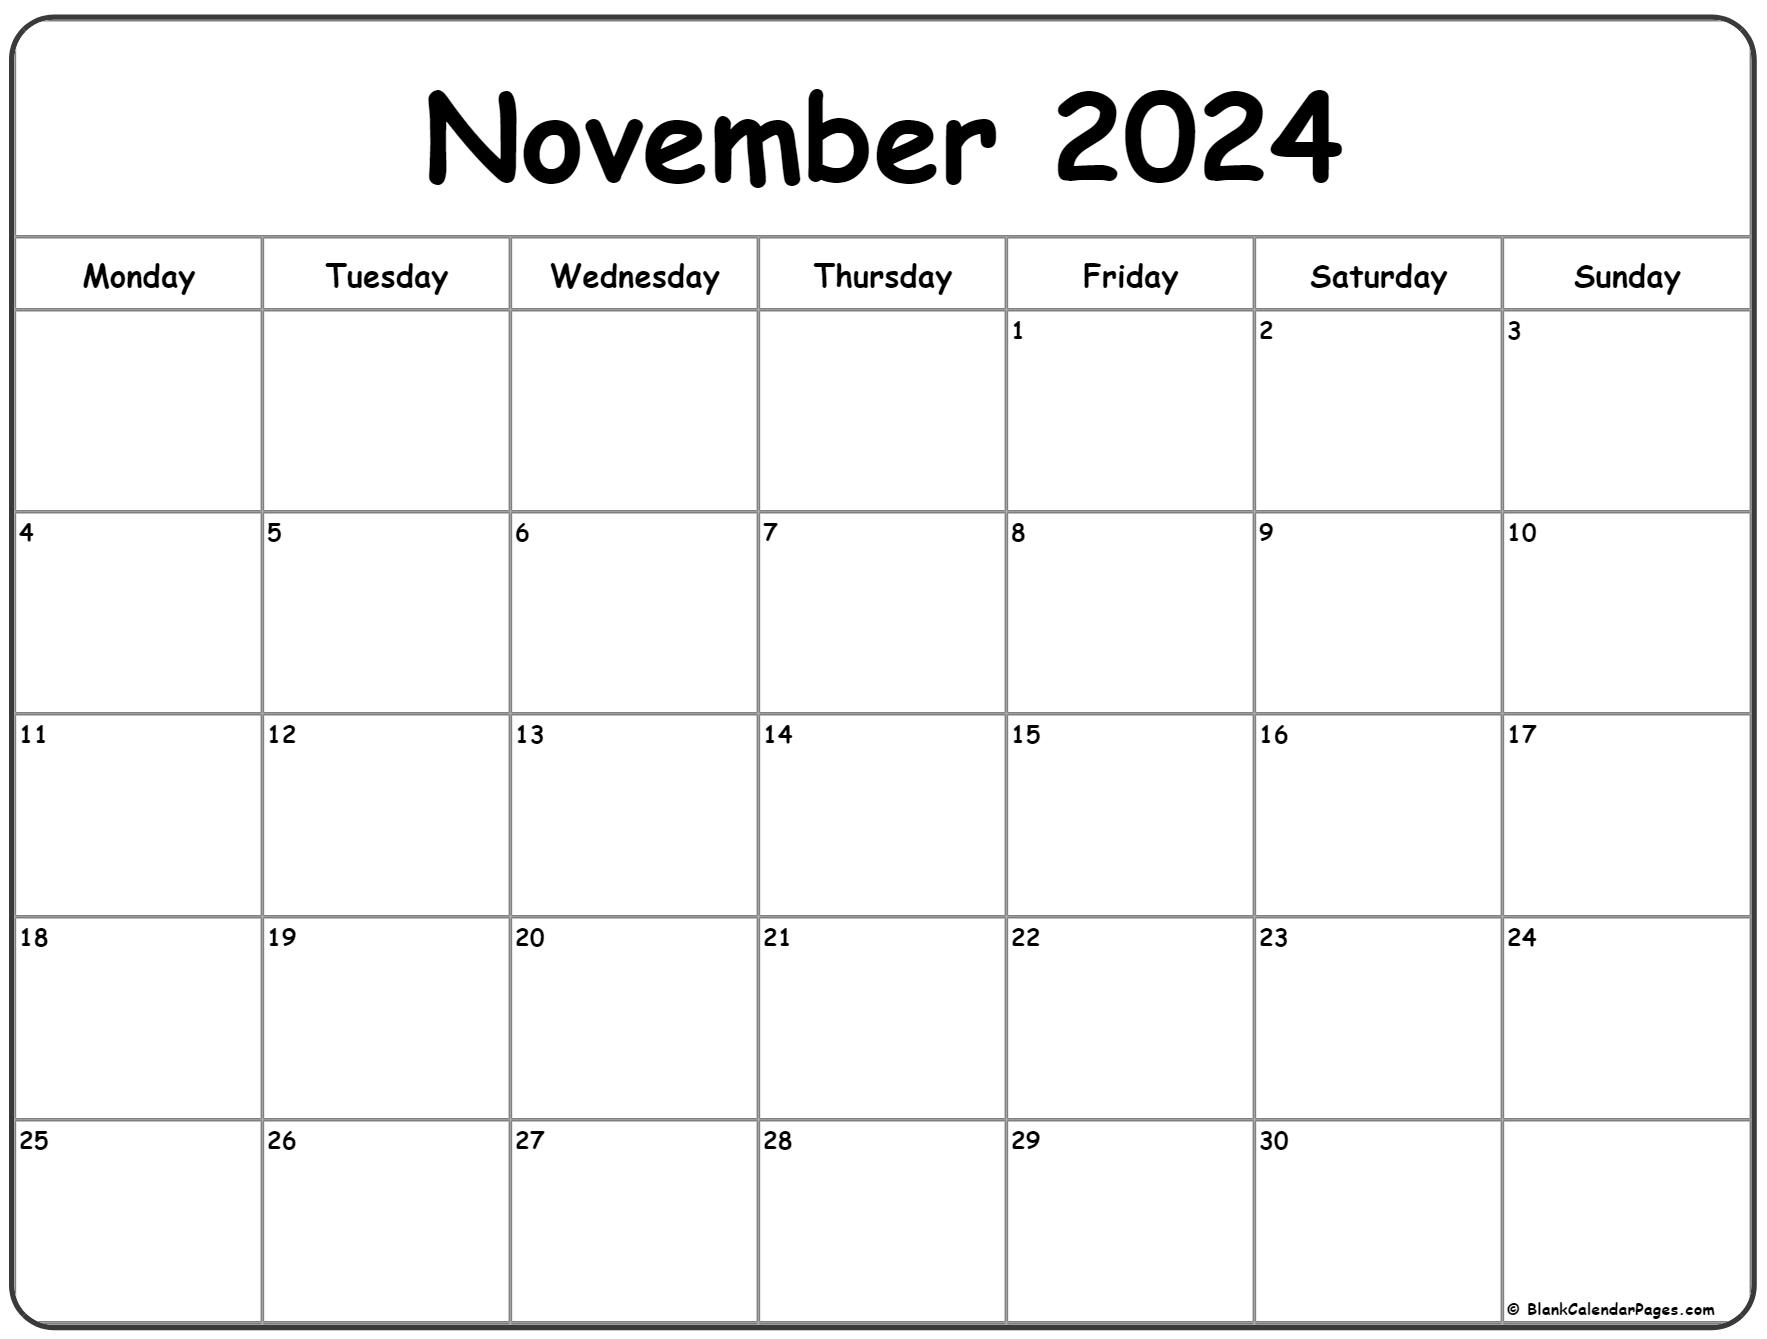 November 2024 Monday Calendar | Monday To Sunday for 2024 Calendar Printable November